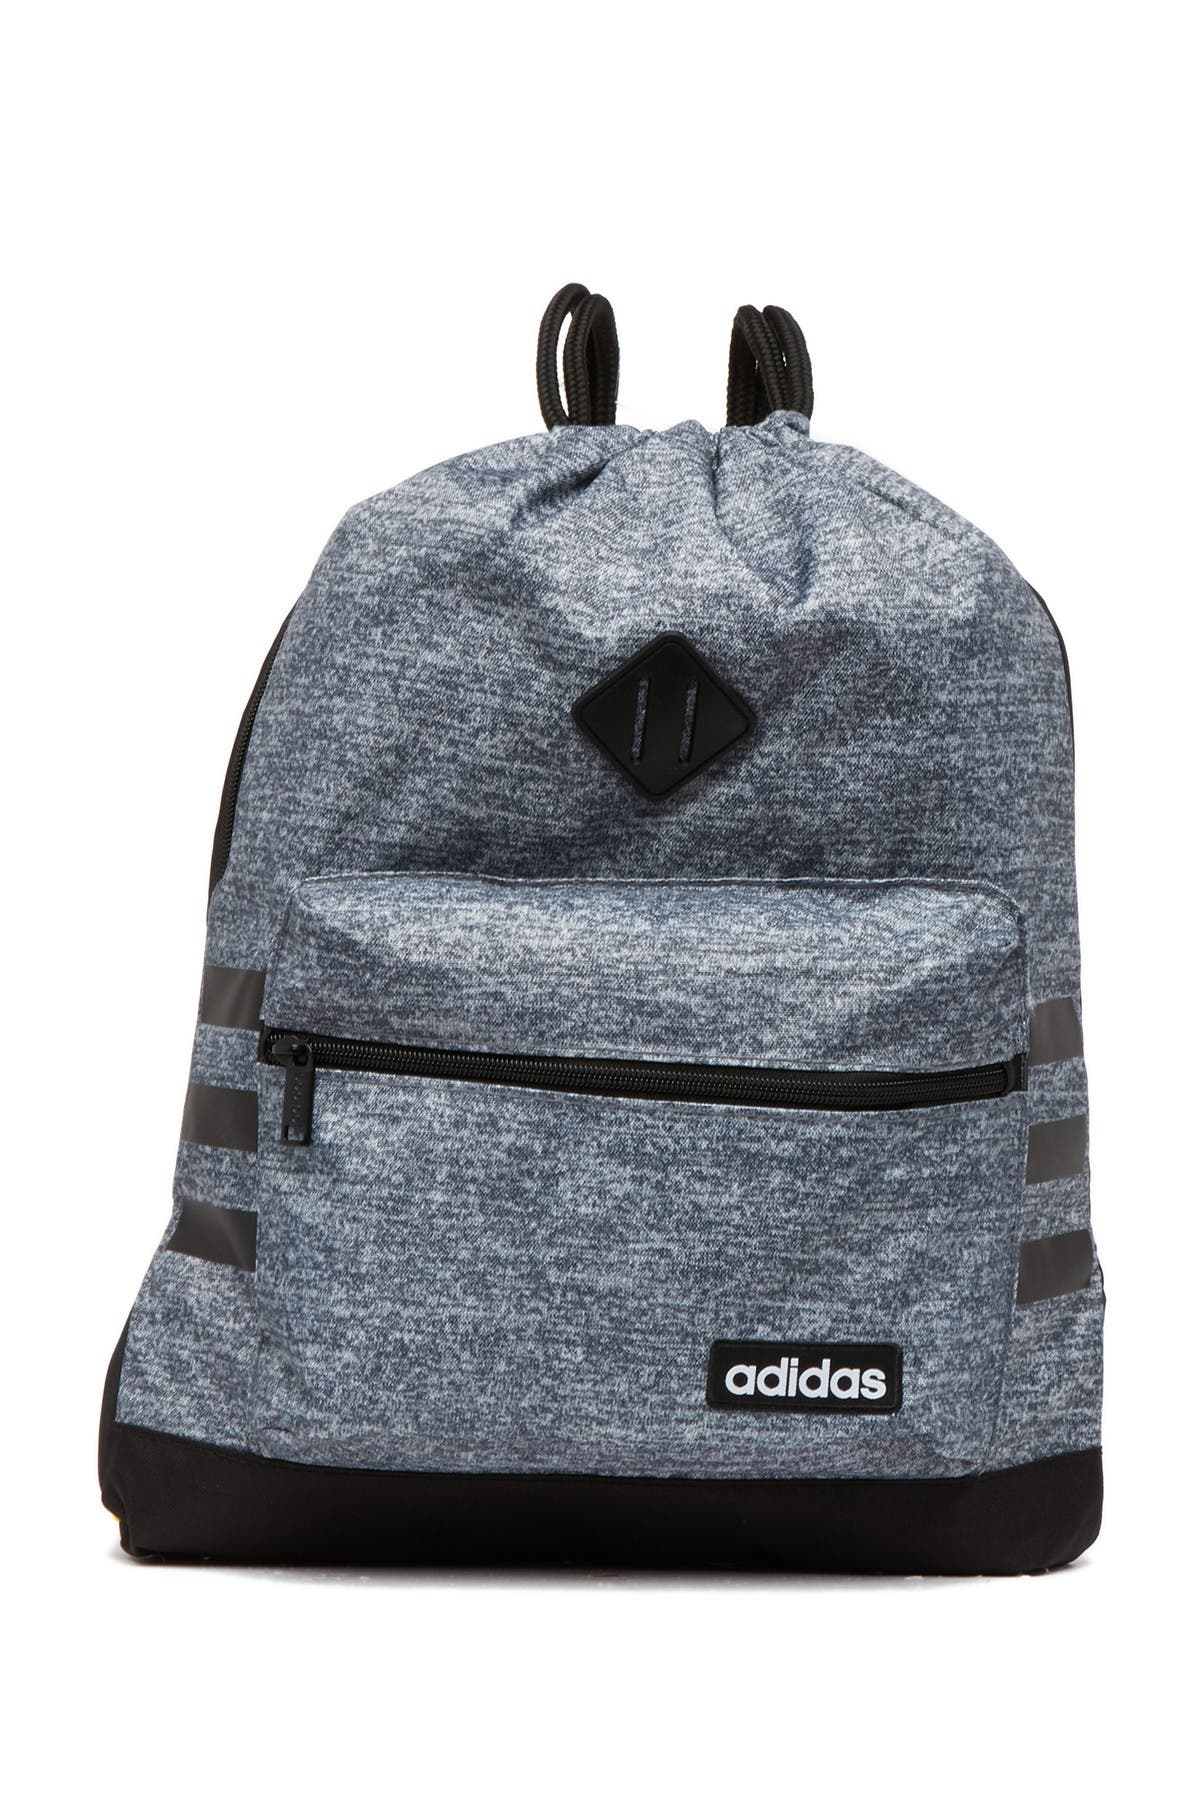 Adidas Originals Classic 3s Sackpack In Medium Grey